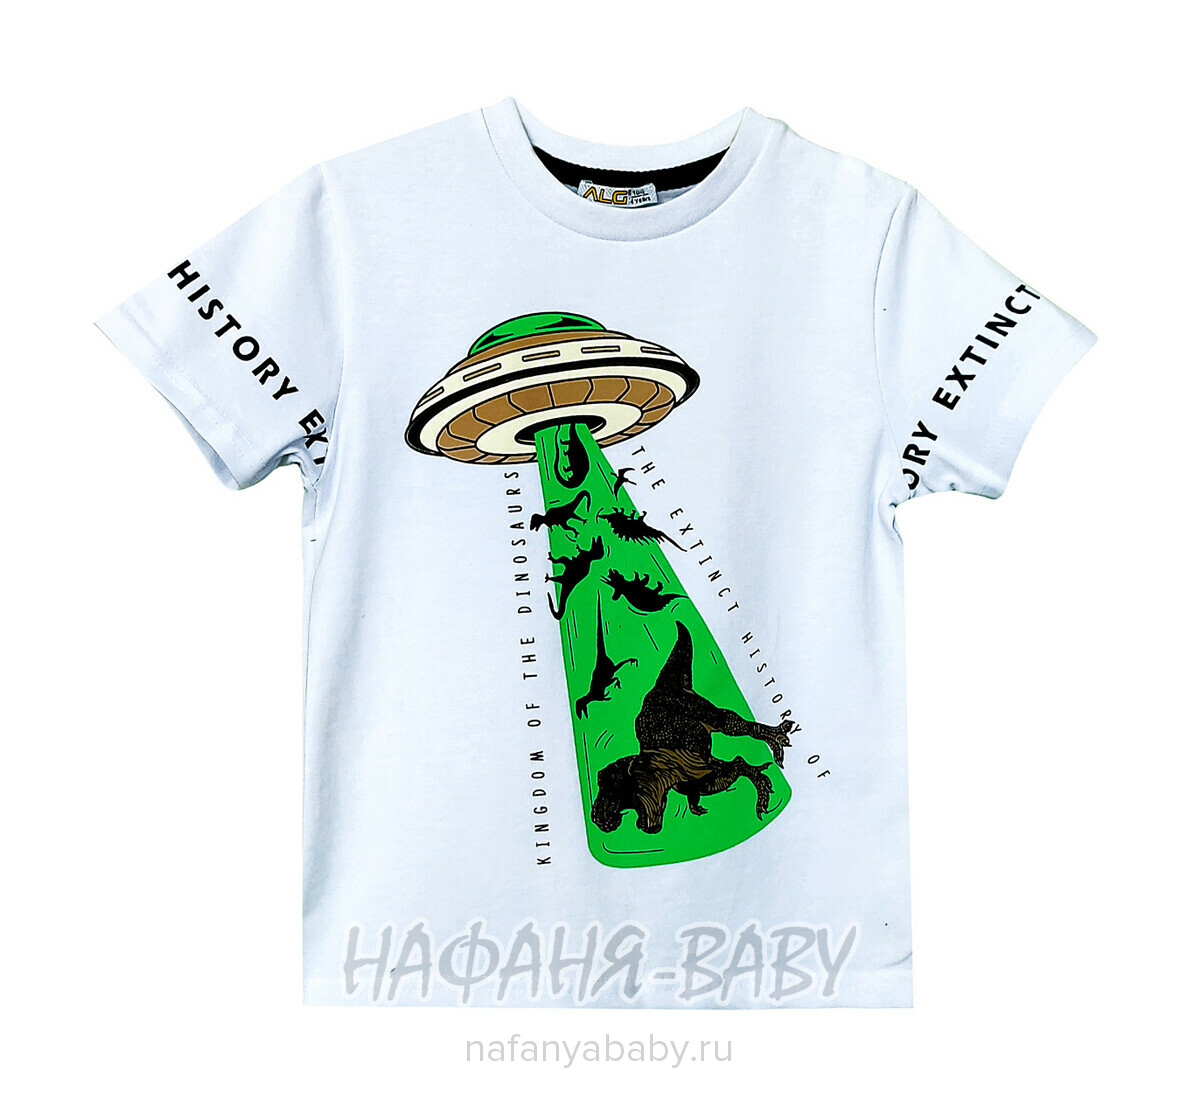 Детская футболка ALG, купить в интернет магазине Нафаня. арт: 222707 цвет белый